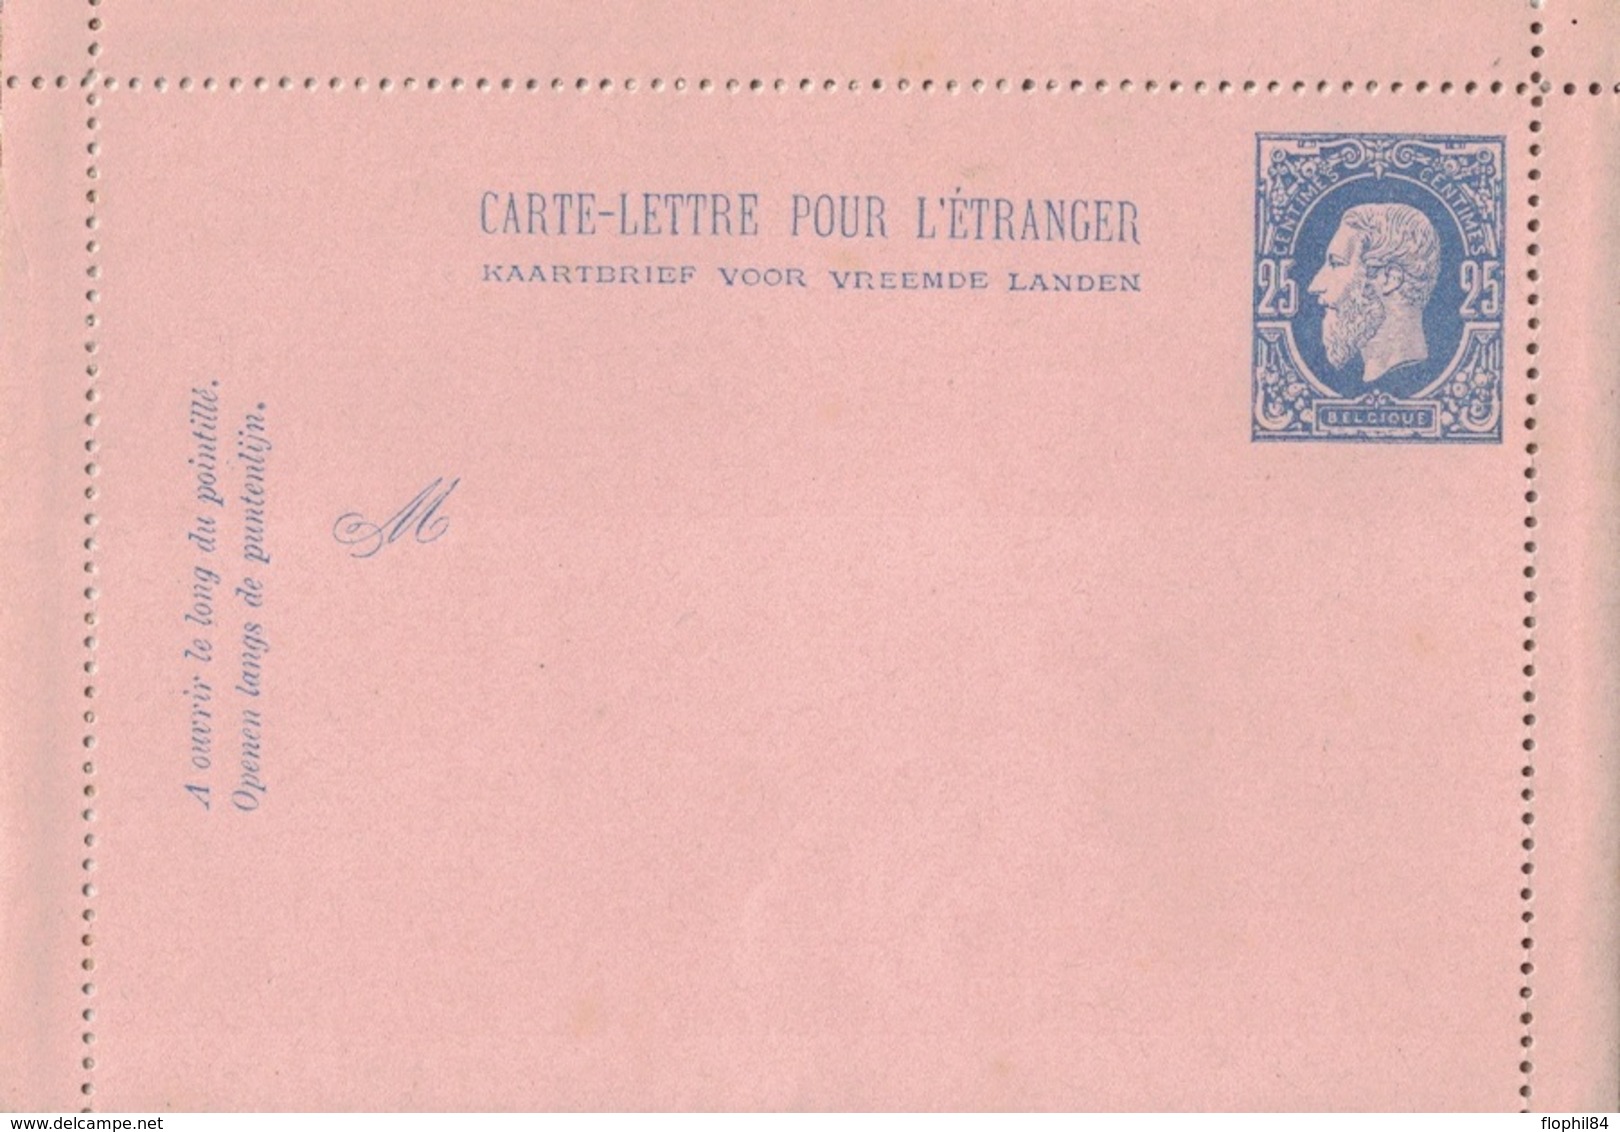 BELGIQUE - CARTE LETTRE NEUVE POUR L'ETRANGER - 25c BLEU. - Letter-Cards